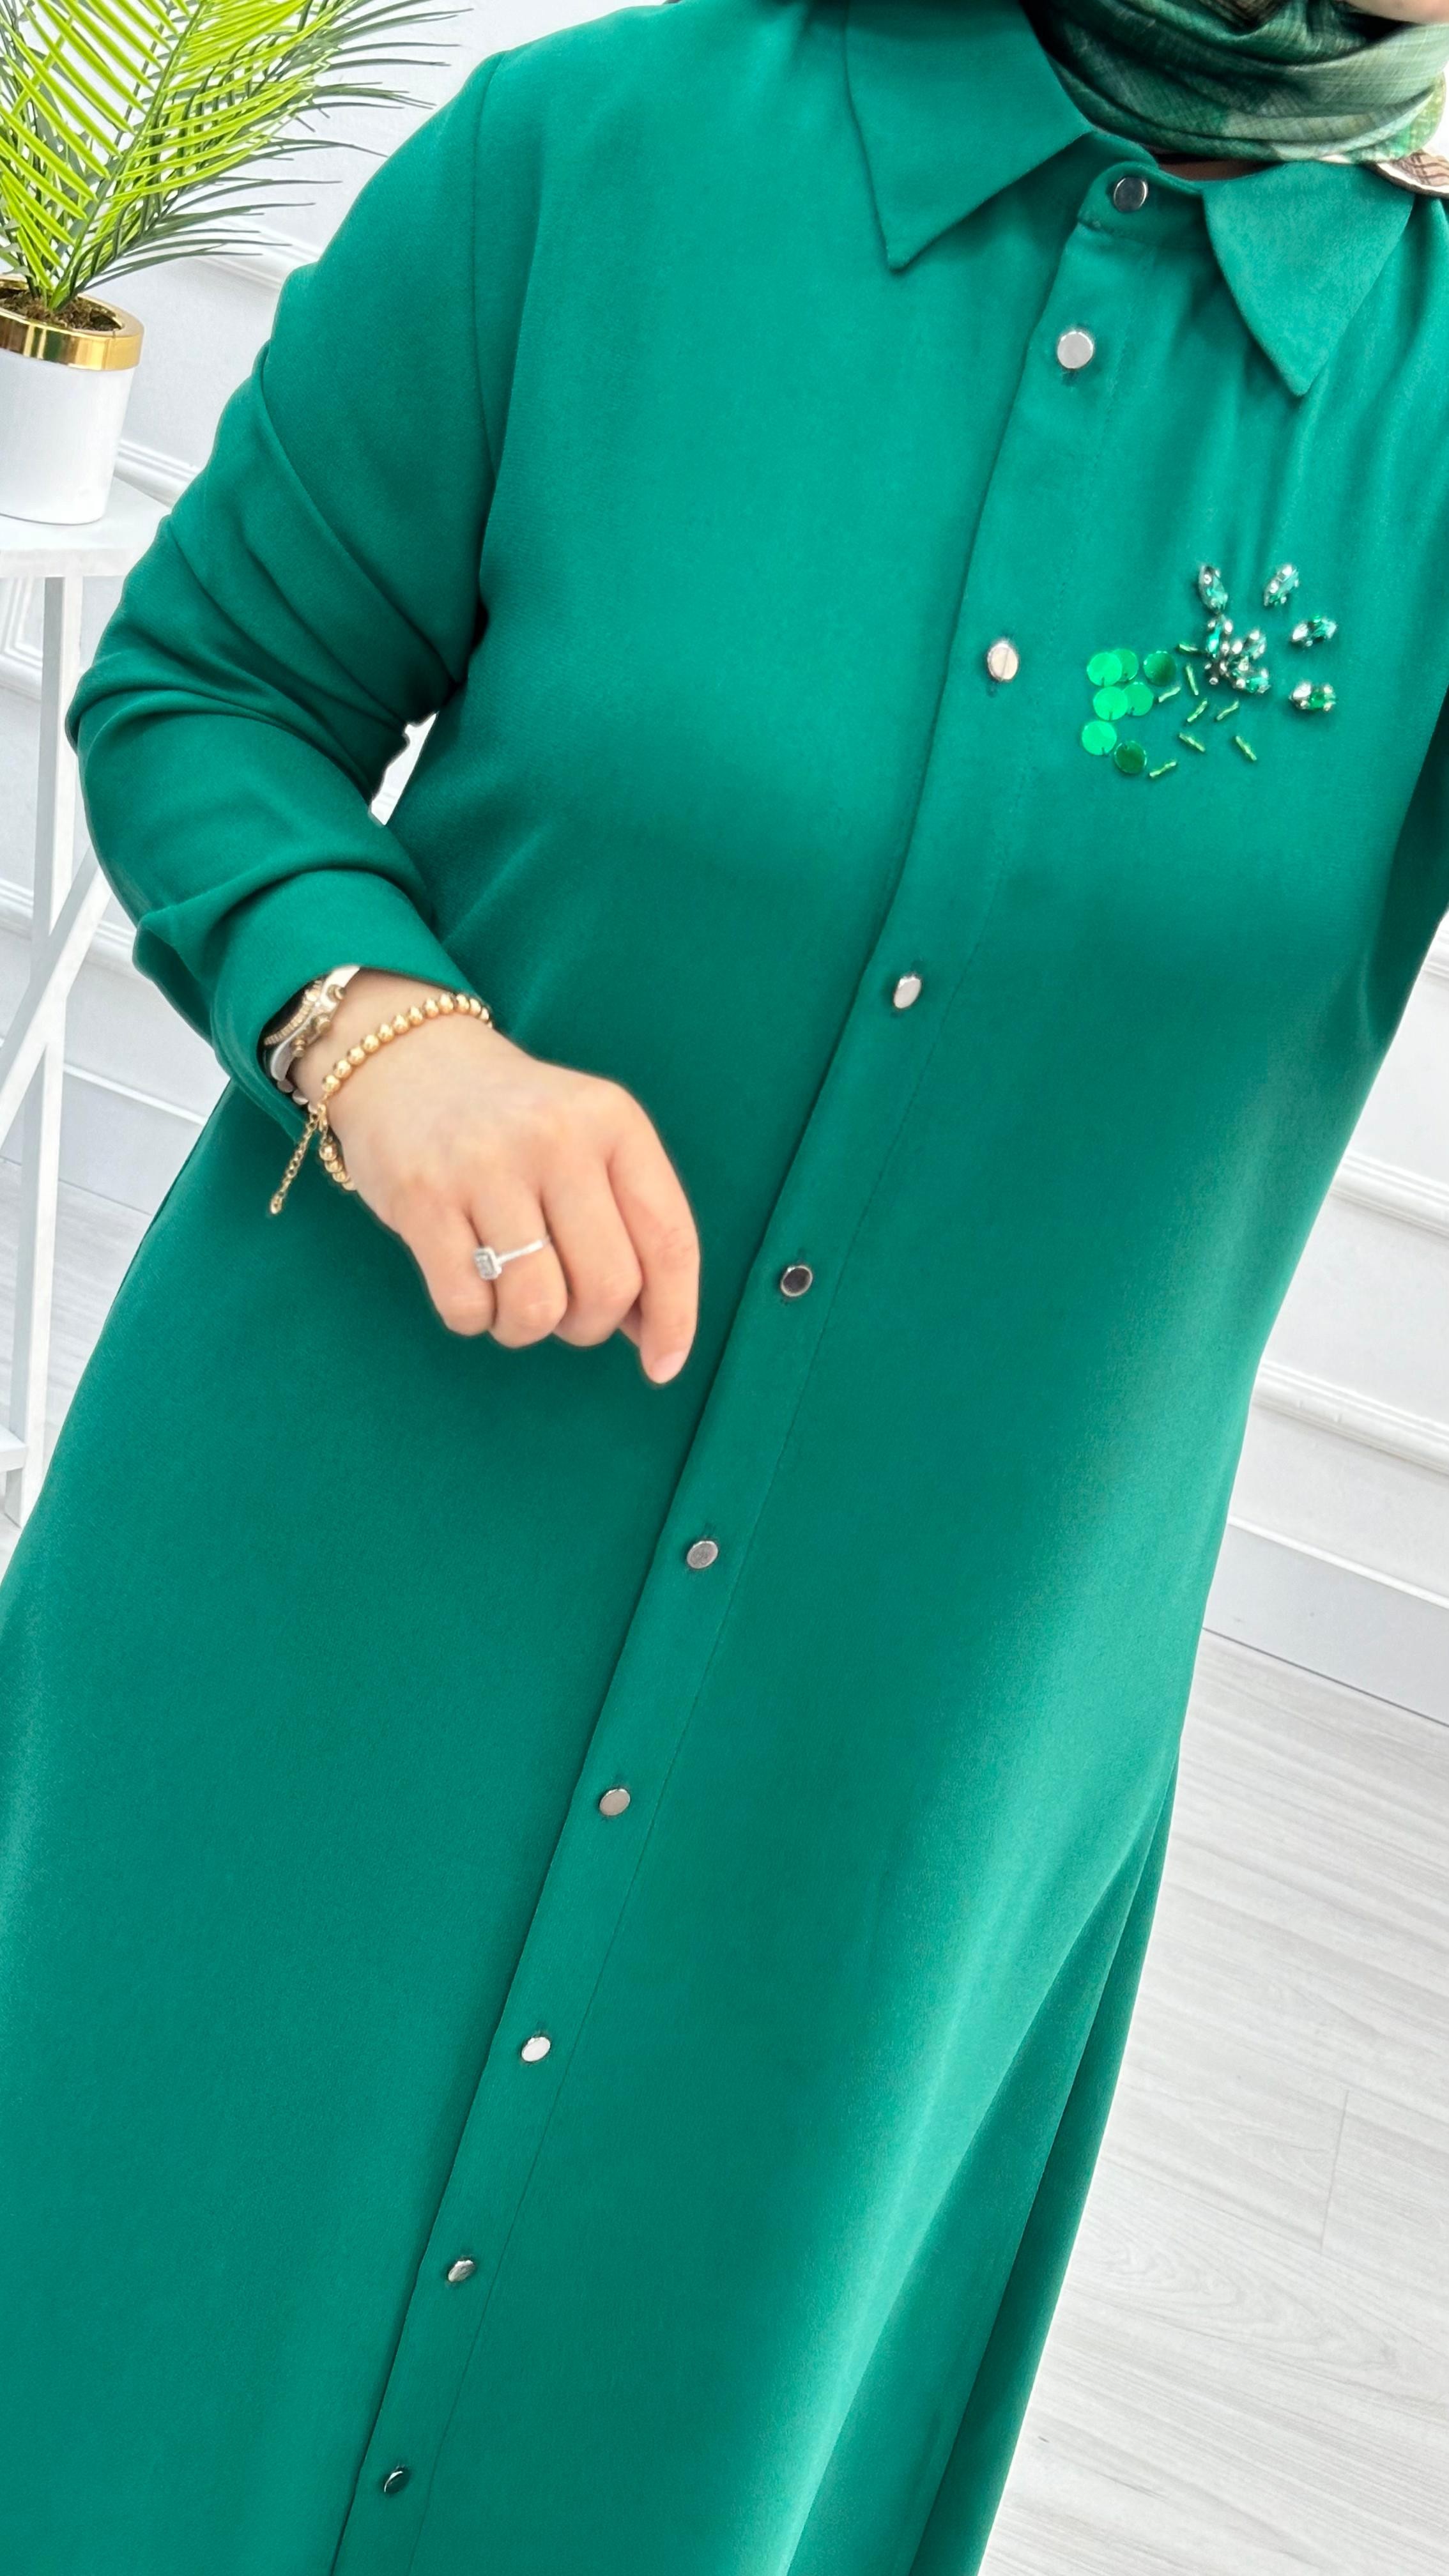 Çınar Özkan Pullu Taşlı Krep Tunik 1629 - Benetton Yeşili